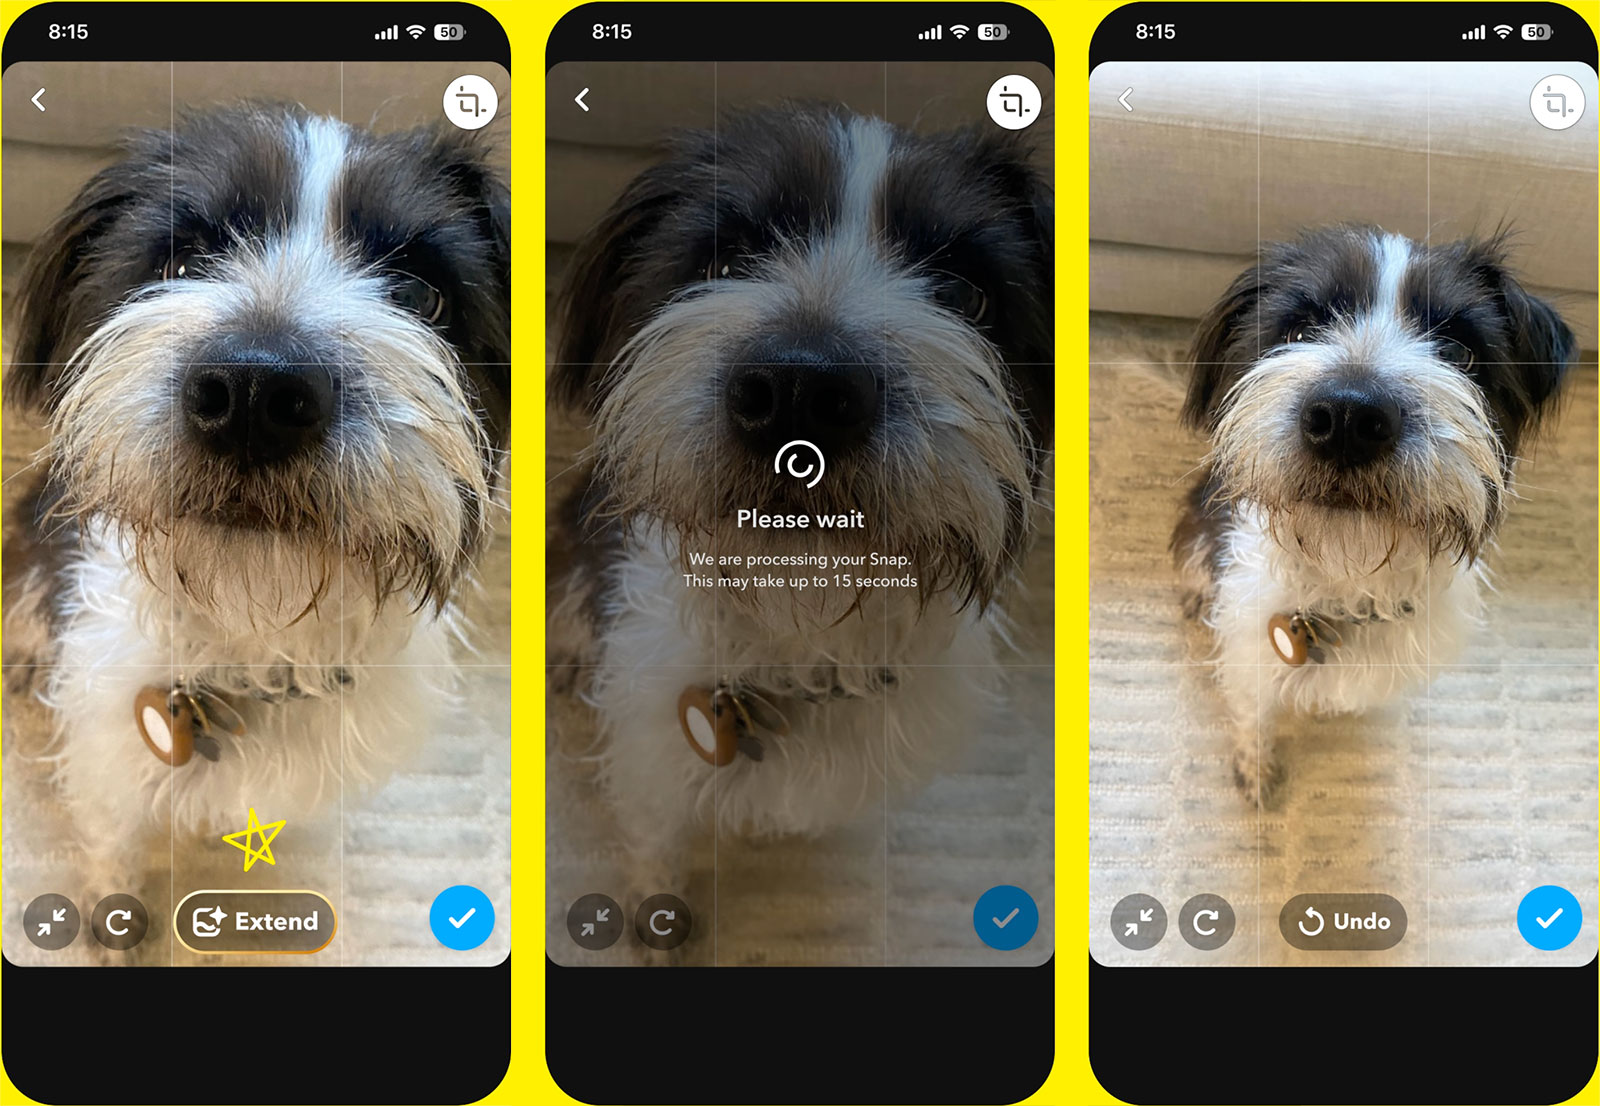 Snapchat+ Abonnenten können jetzt KI verwenden, um Bilder in der App zu erstellen oder zu erweitern